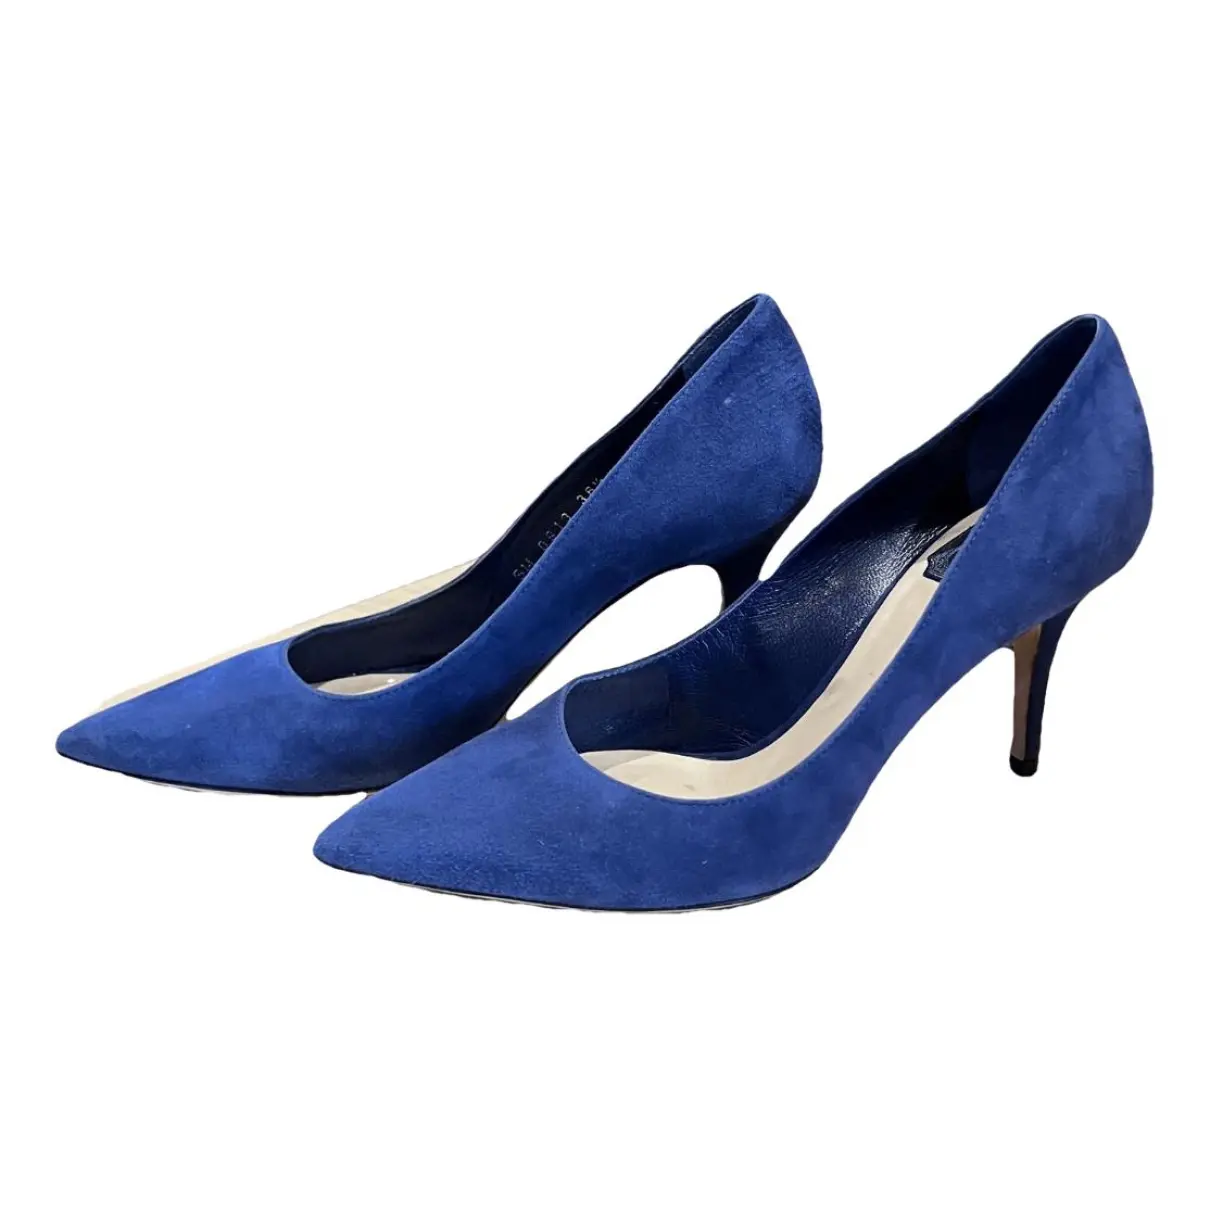 Dior Cherie Pointy Pump heels